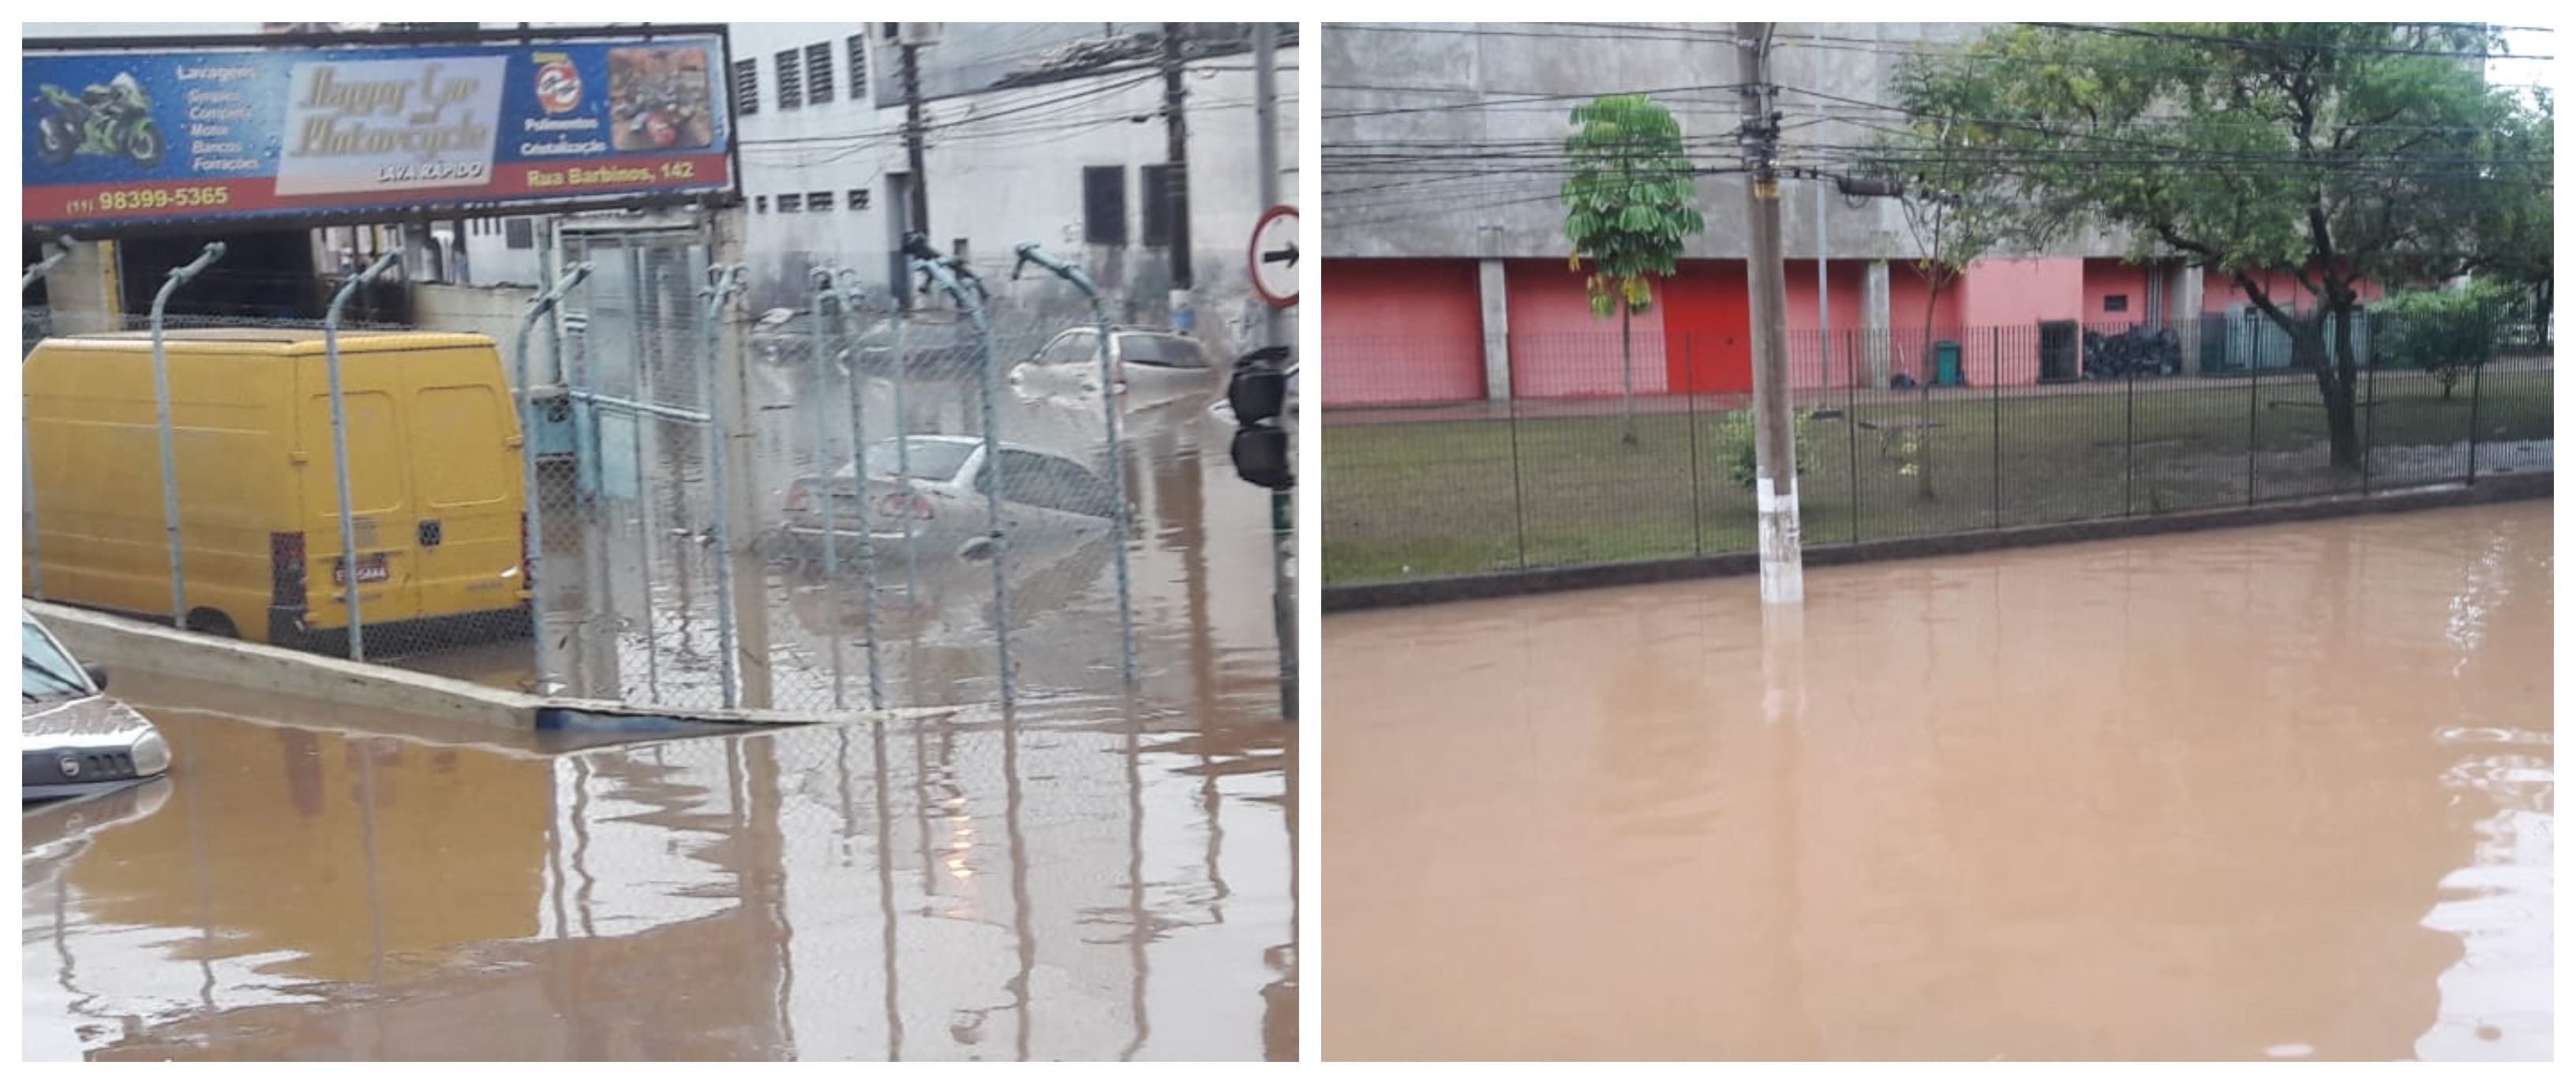 Juliana Cardoso: Enchentes não são só fatalidade, refletem ganância por lucro